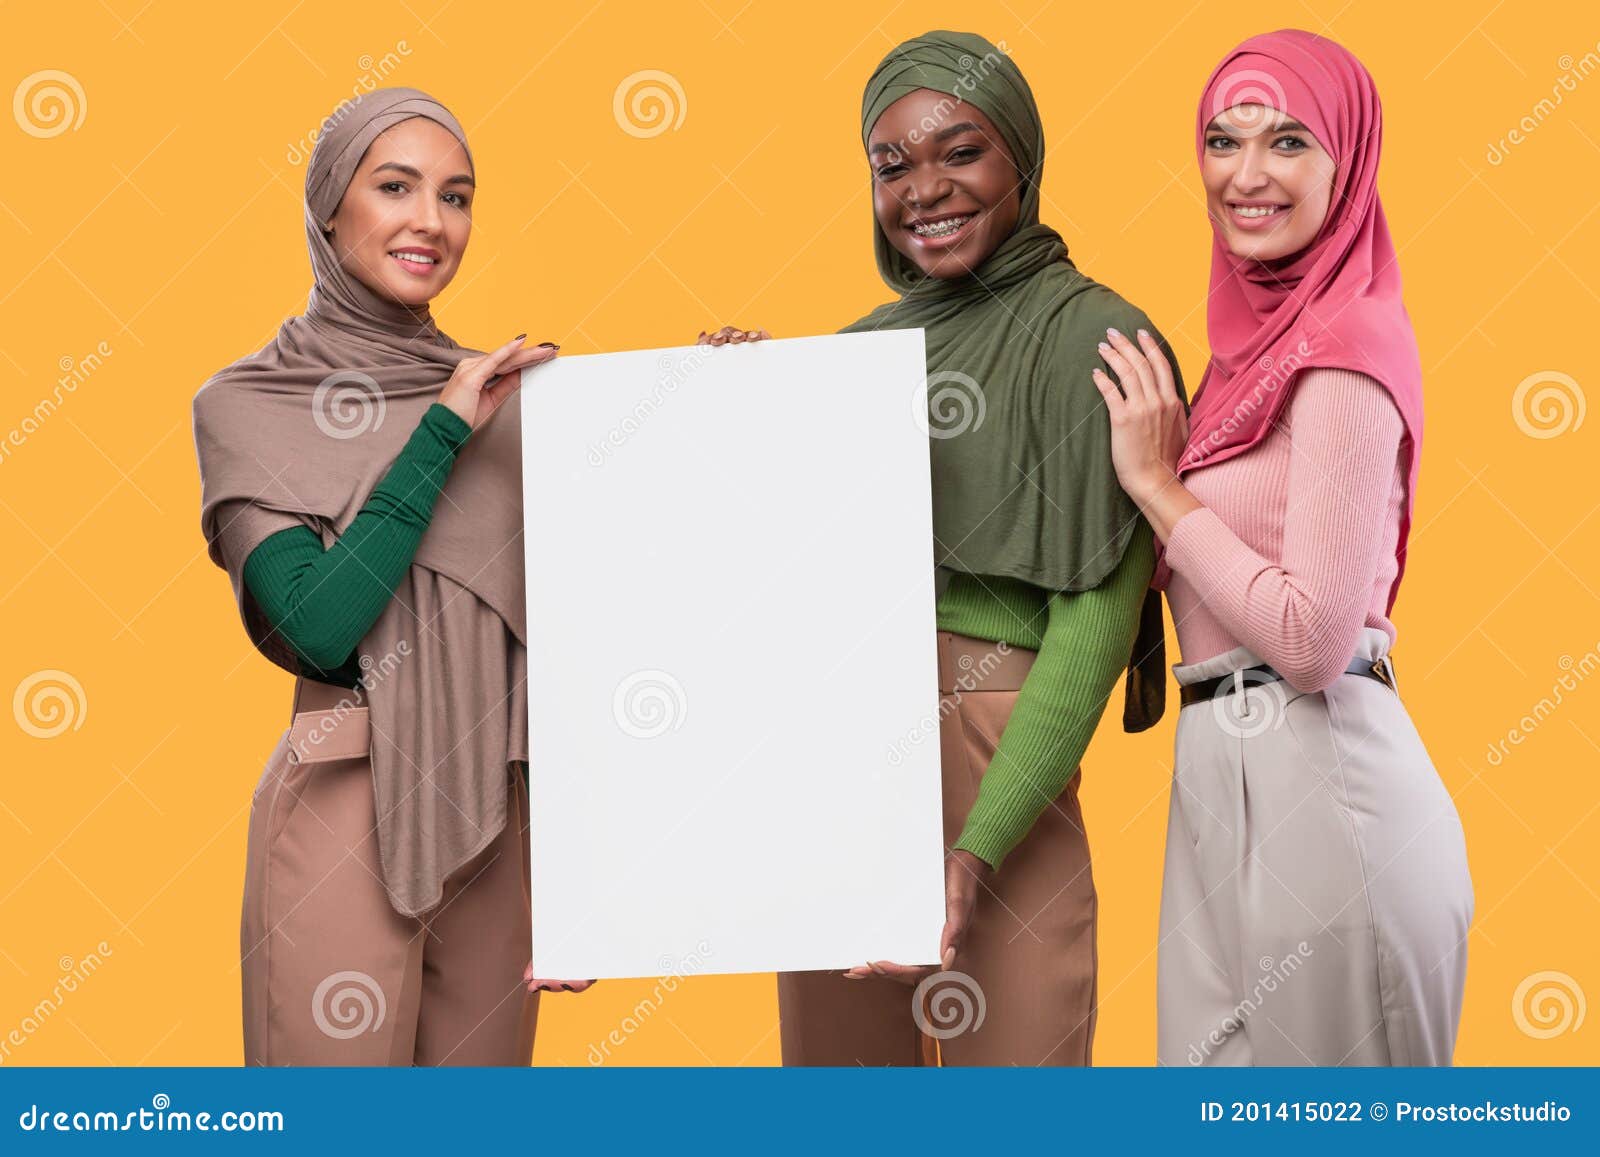 Images muslim ladies 14 Different